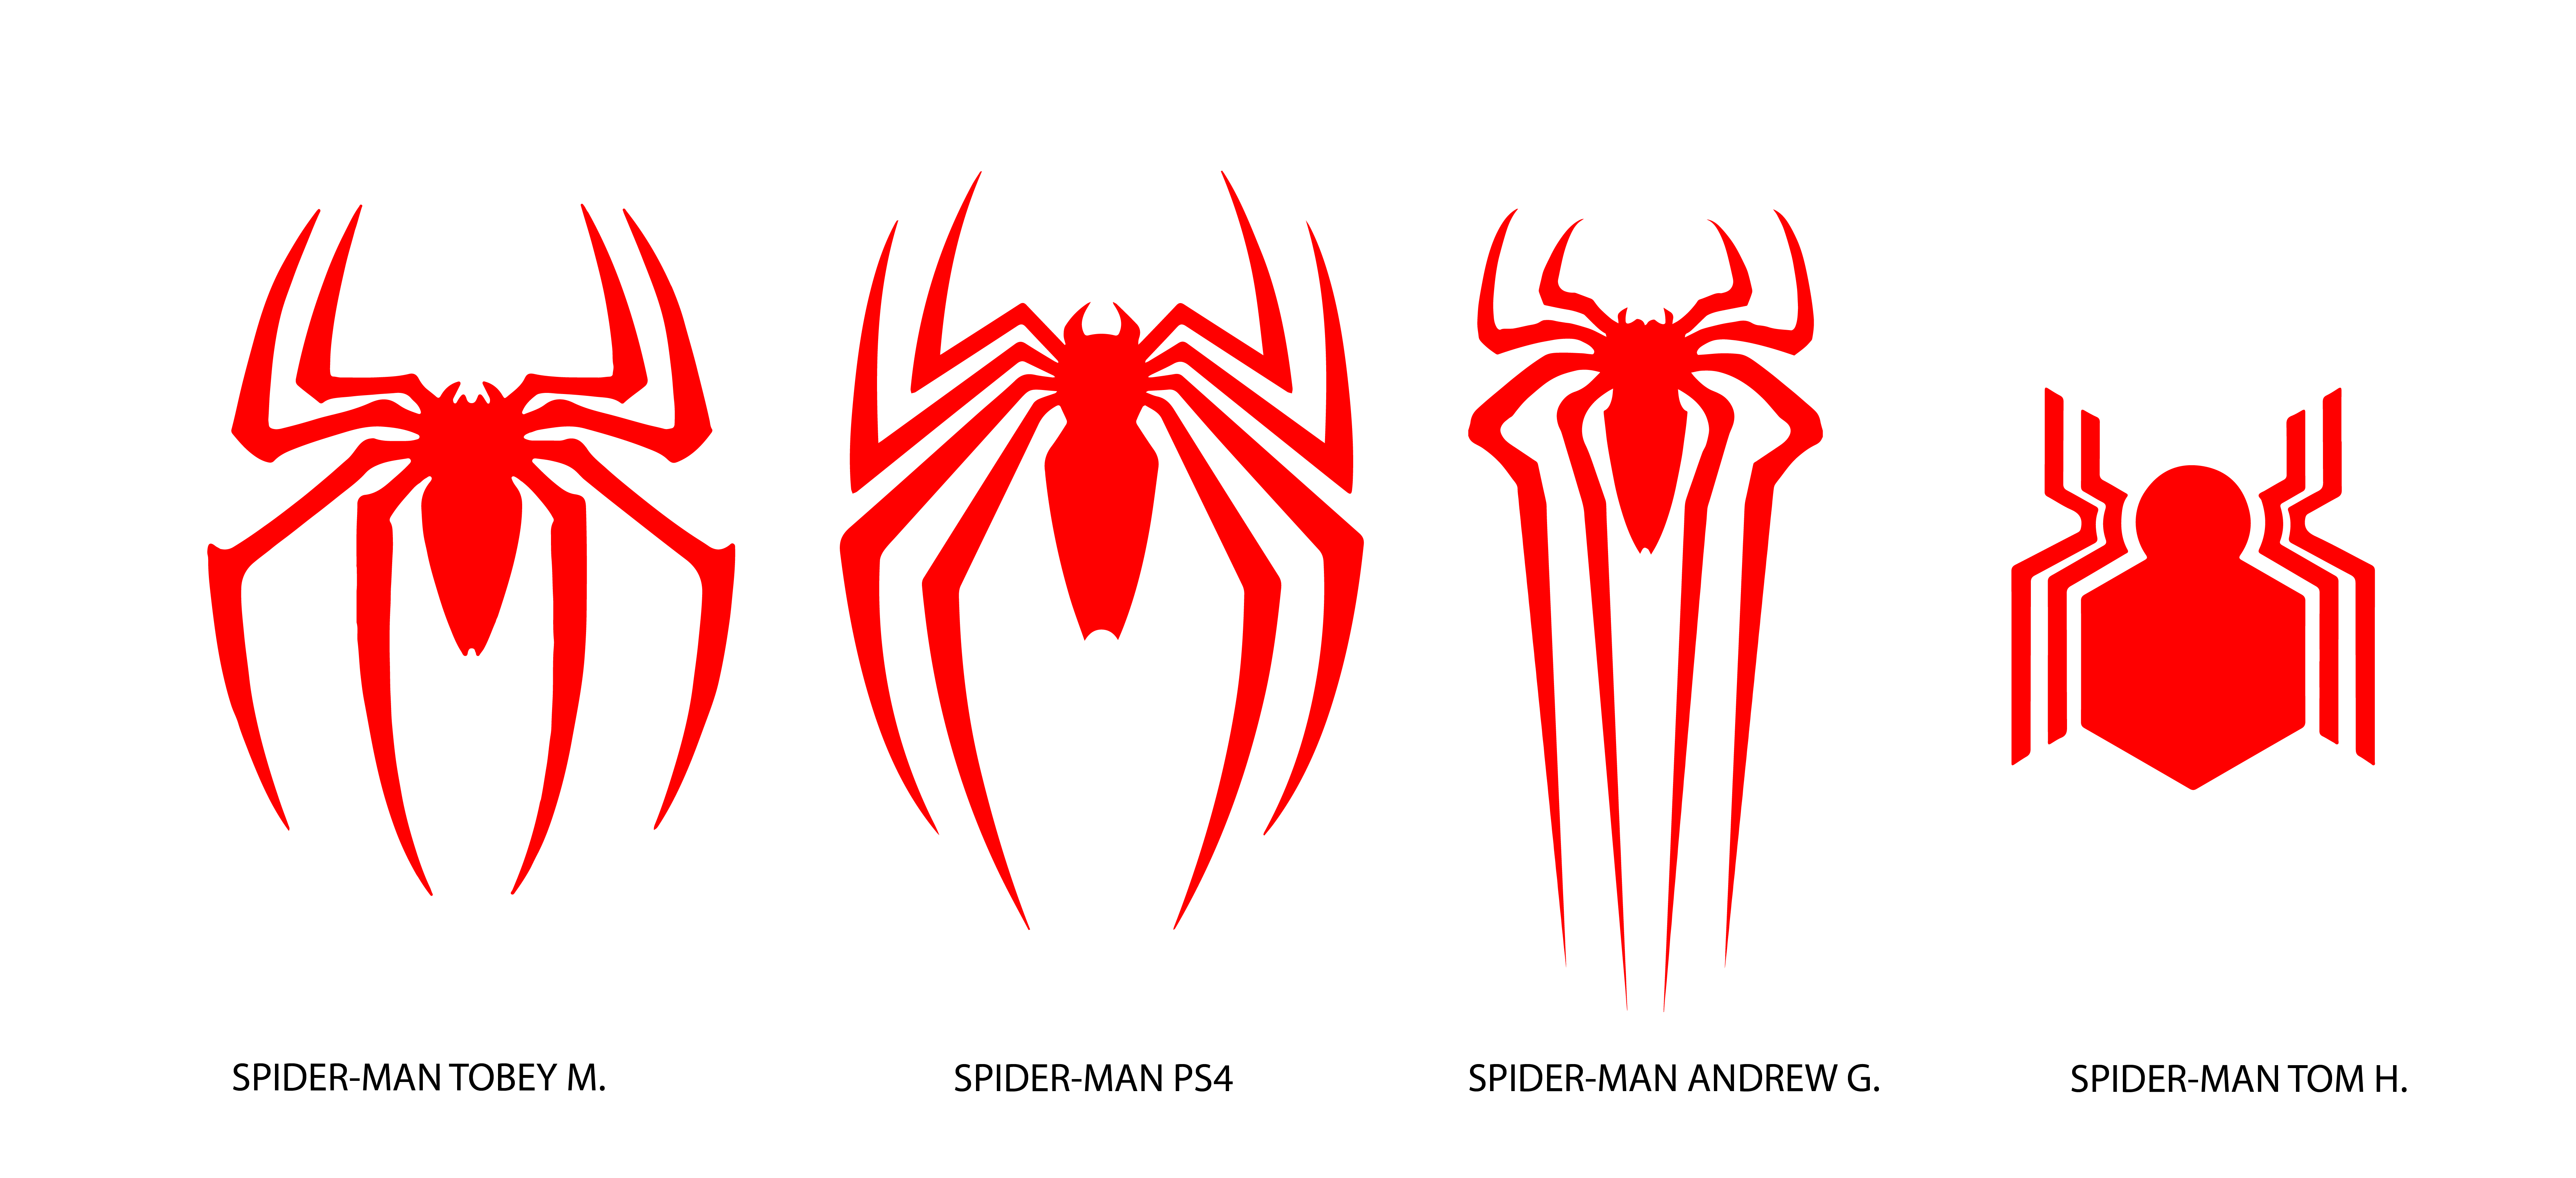 New Spider -Man Logo - SPIDER-MAN LOGO COMPARISON WHICH ONE IS YOUR FAVORITE ? : SpidermanPS4